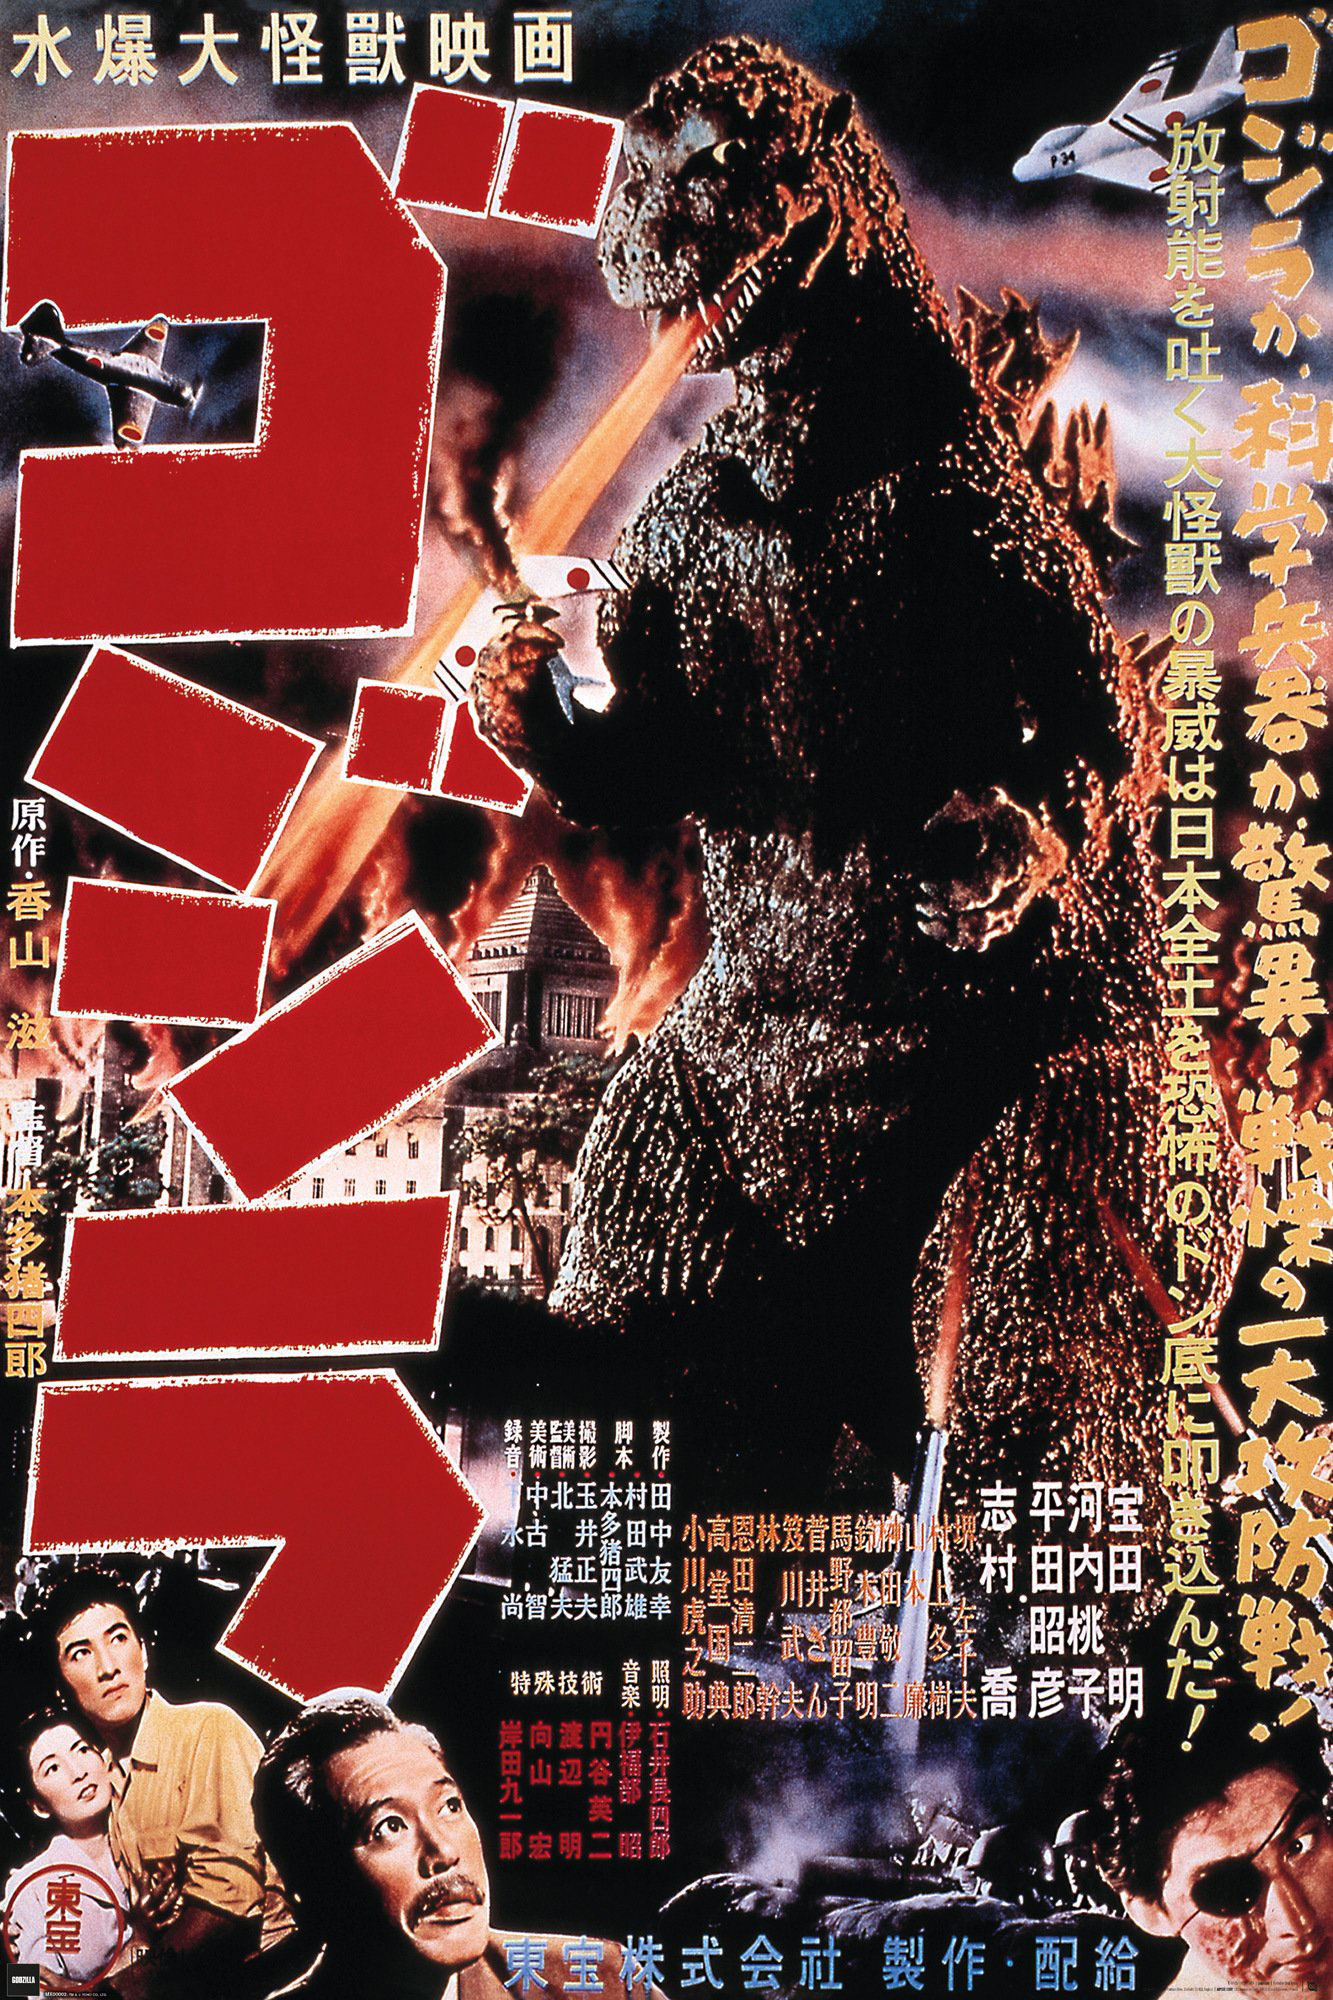 Godzilla - 1954